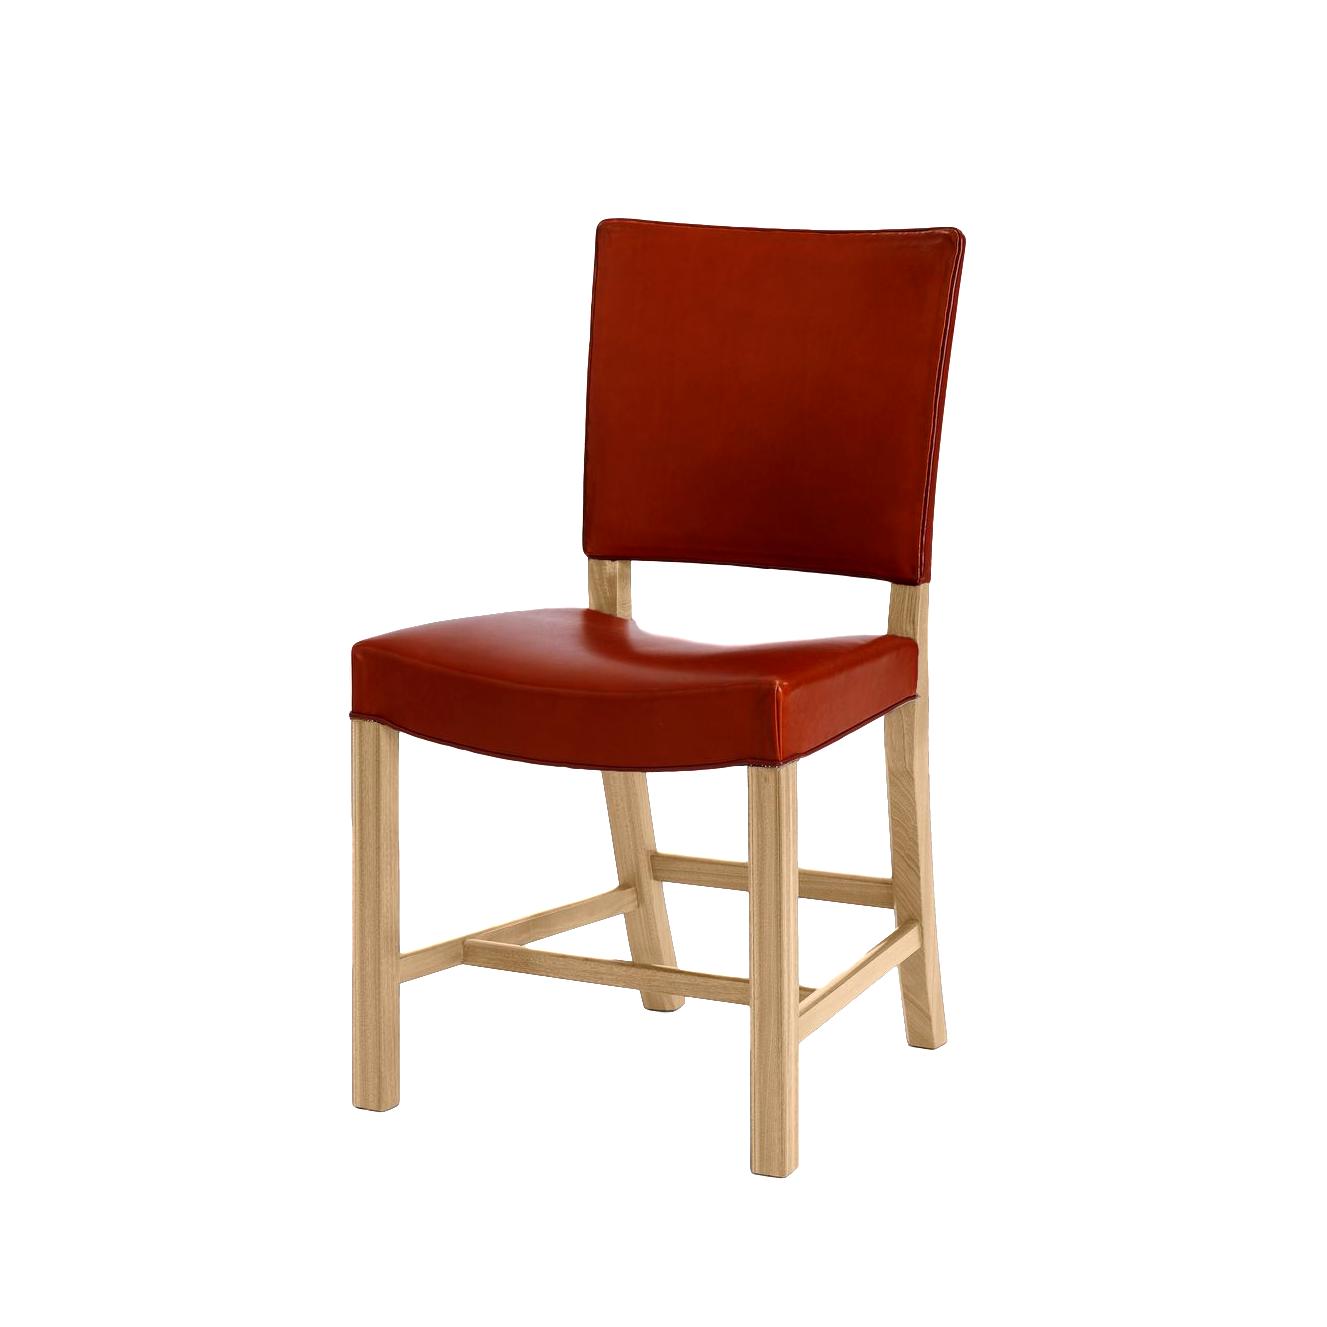 Carl Hansen KK39490 Small Red Chair, chêne en chêne / cuir noir